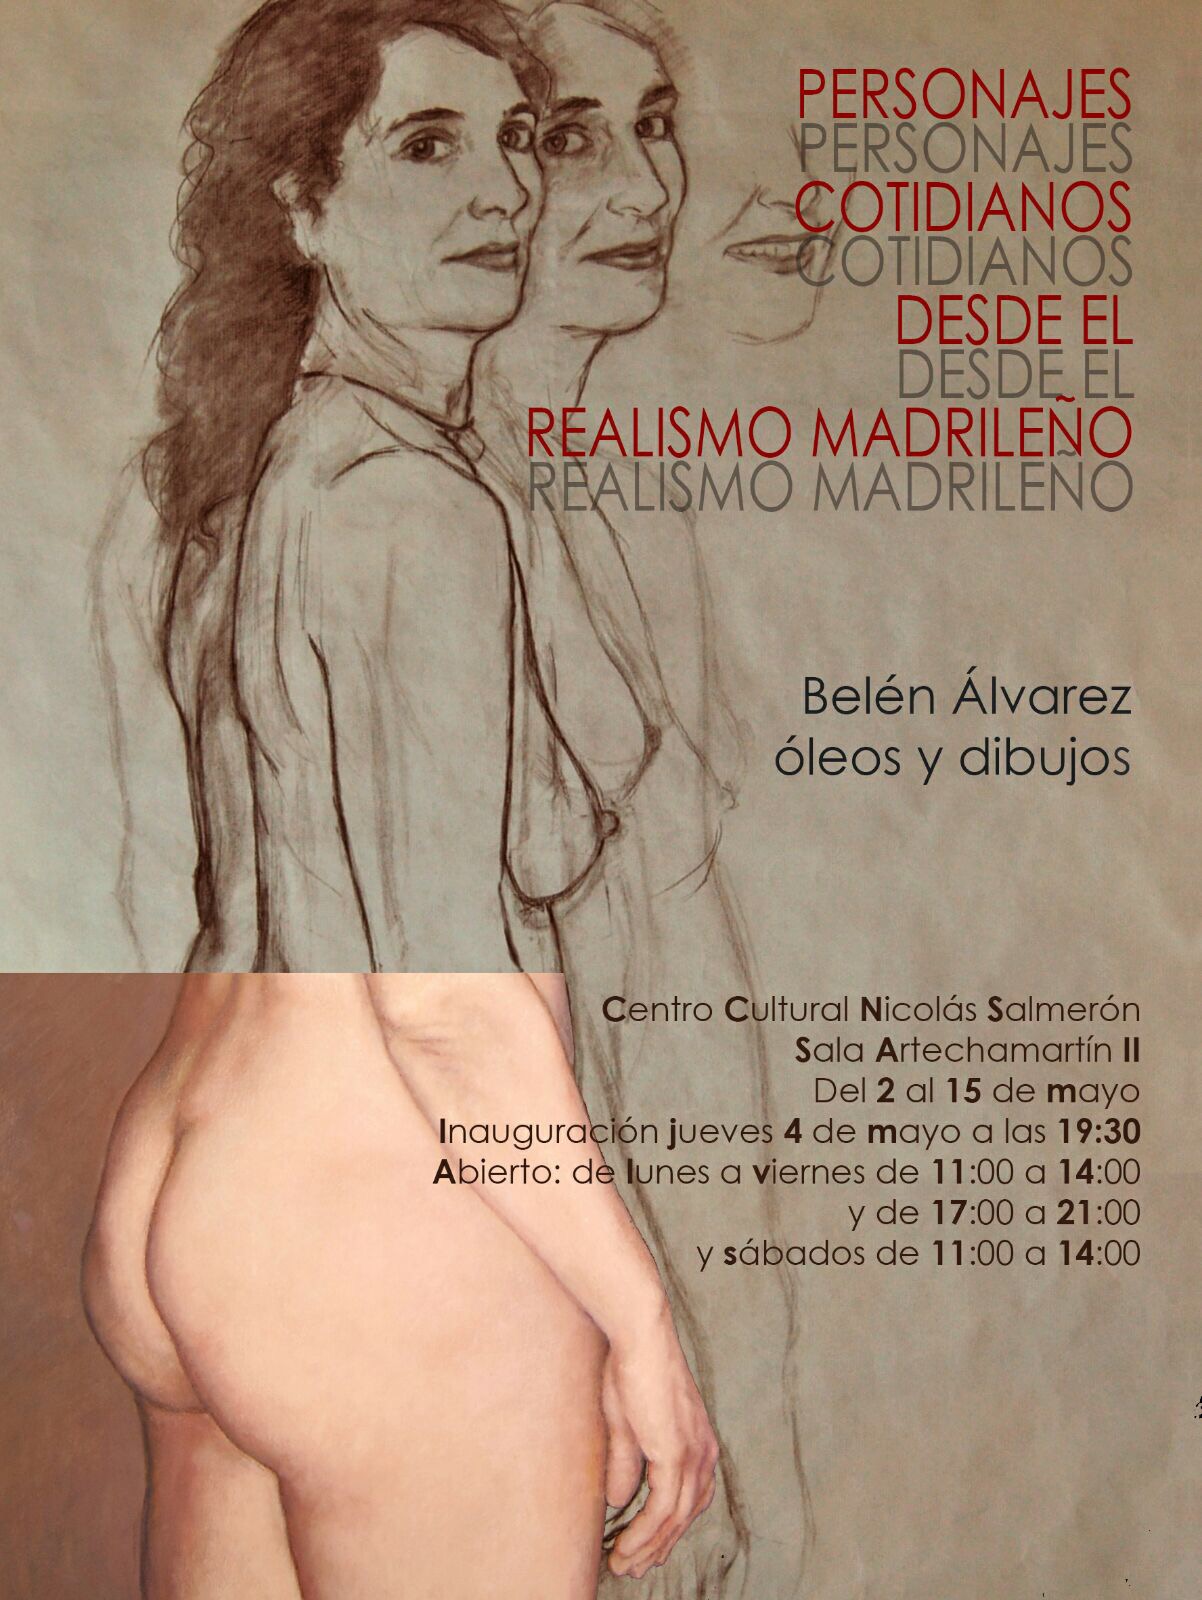 Exposición: Personajes cotidianos desde el realismo madrileño